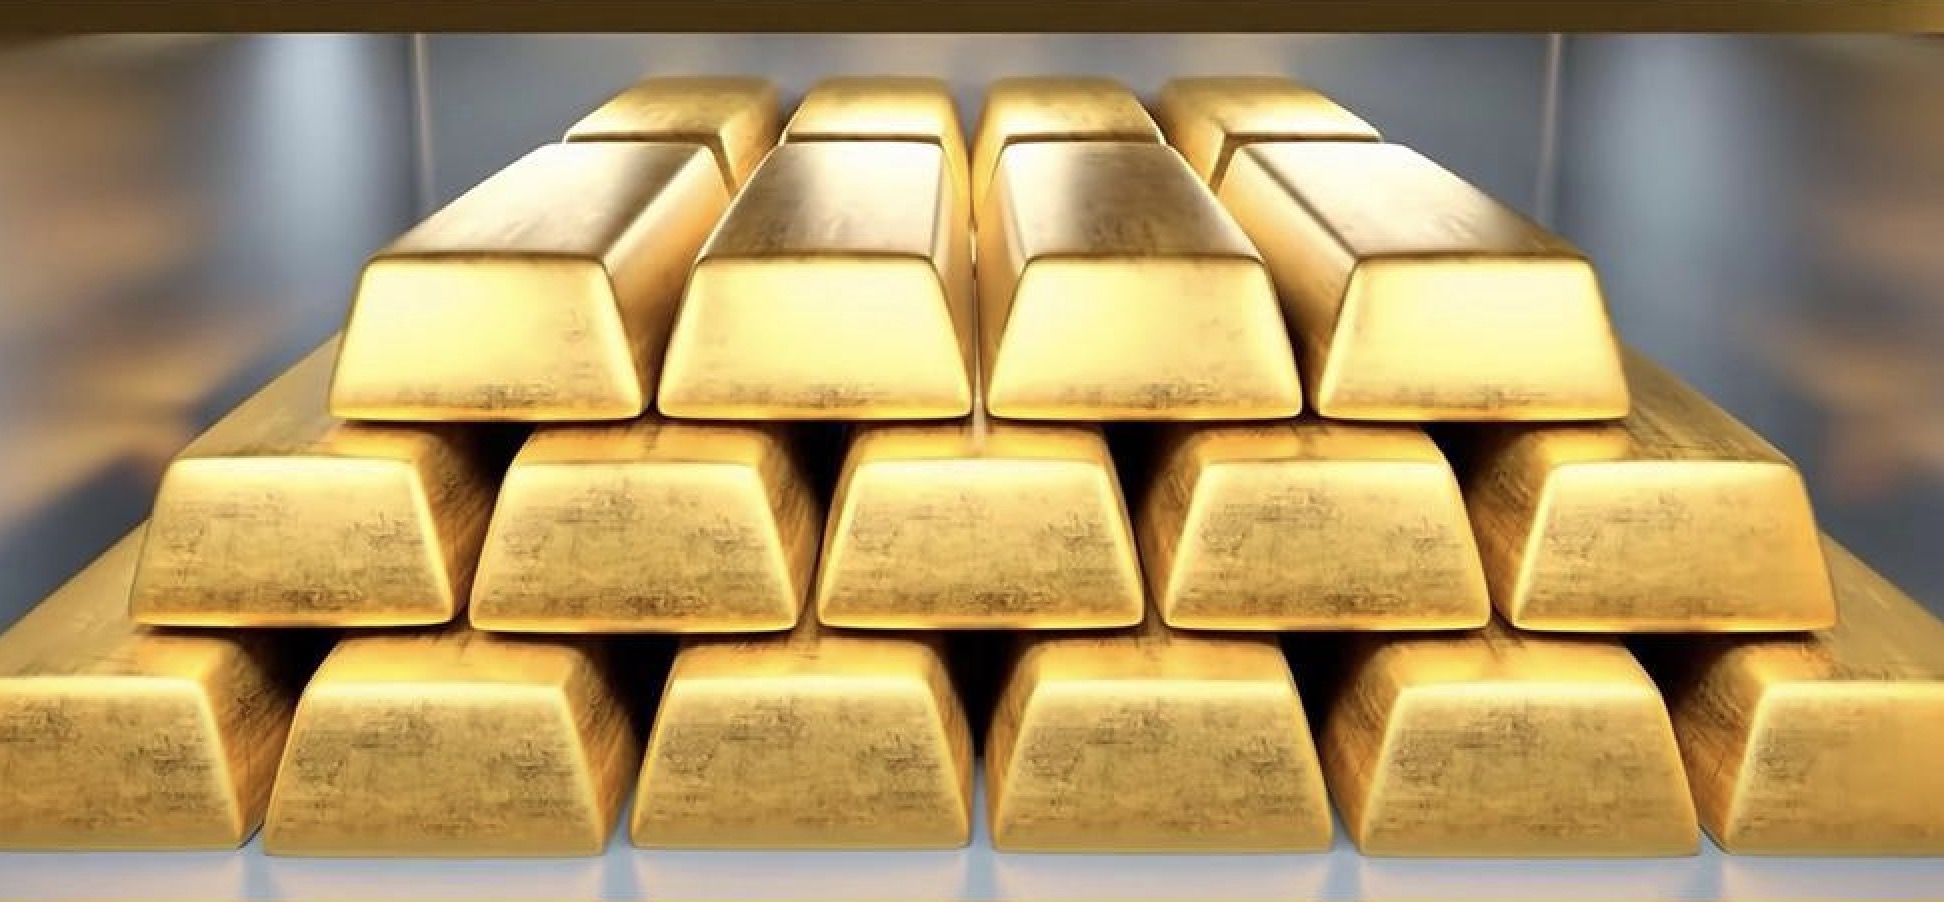 คำเตือนการซื้อขายทองคำ: ราคาทองคำร่วงลงหลังจากแตะระดับสูงสุดใหม่ในอดีต จะสามารถขึ้นต่อไปได้หรือไม่?